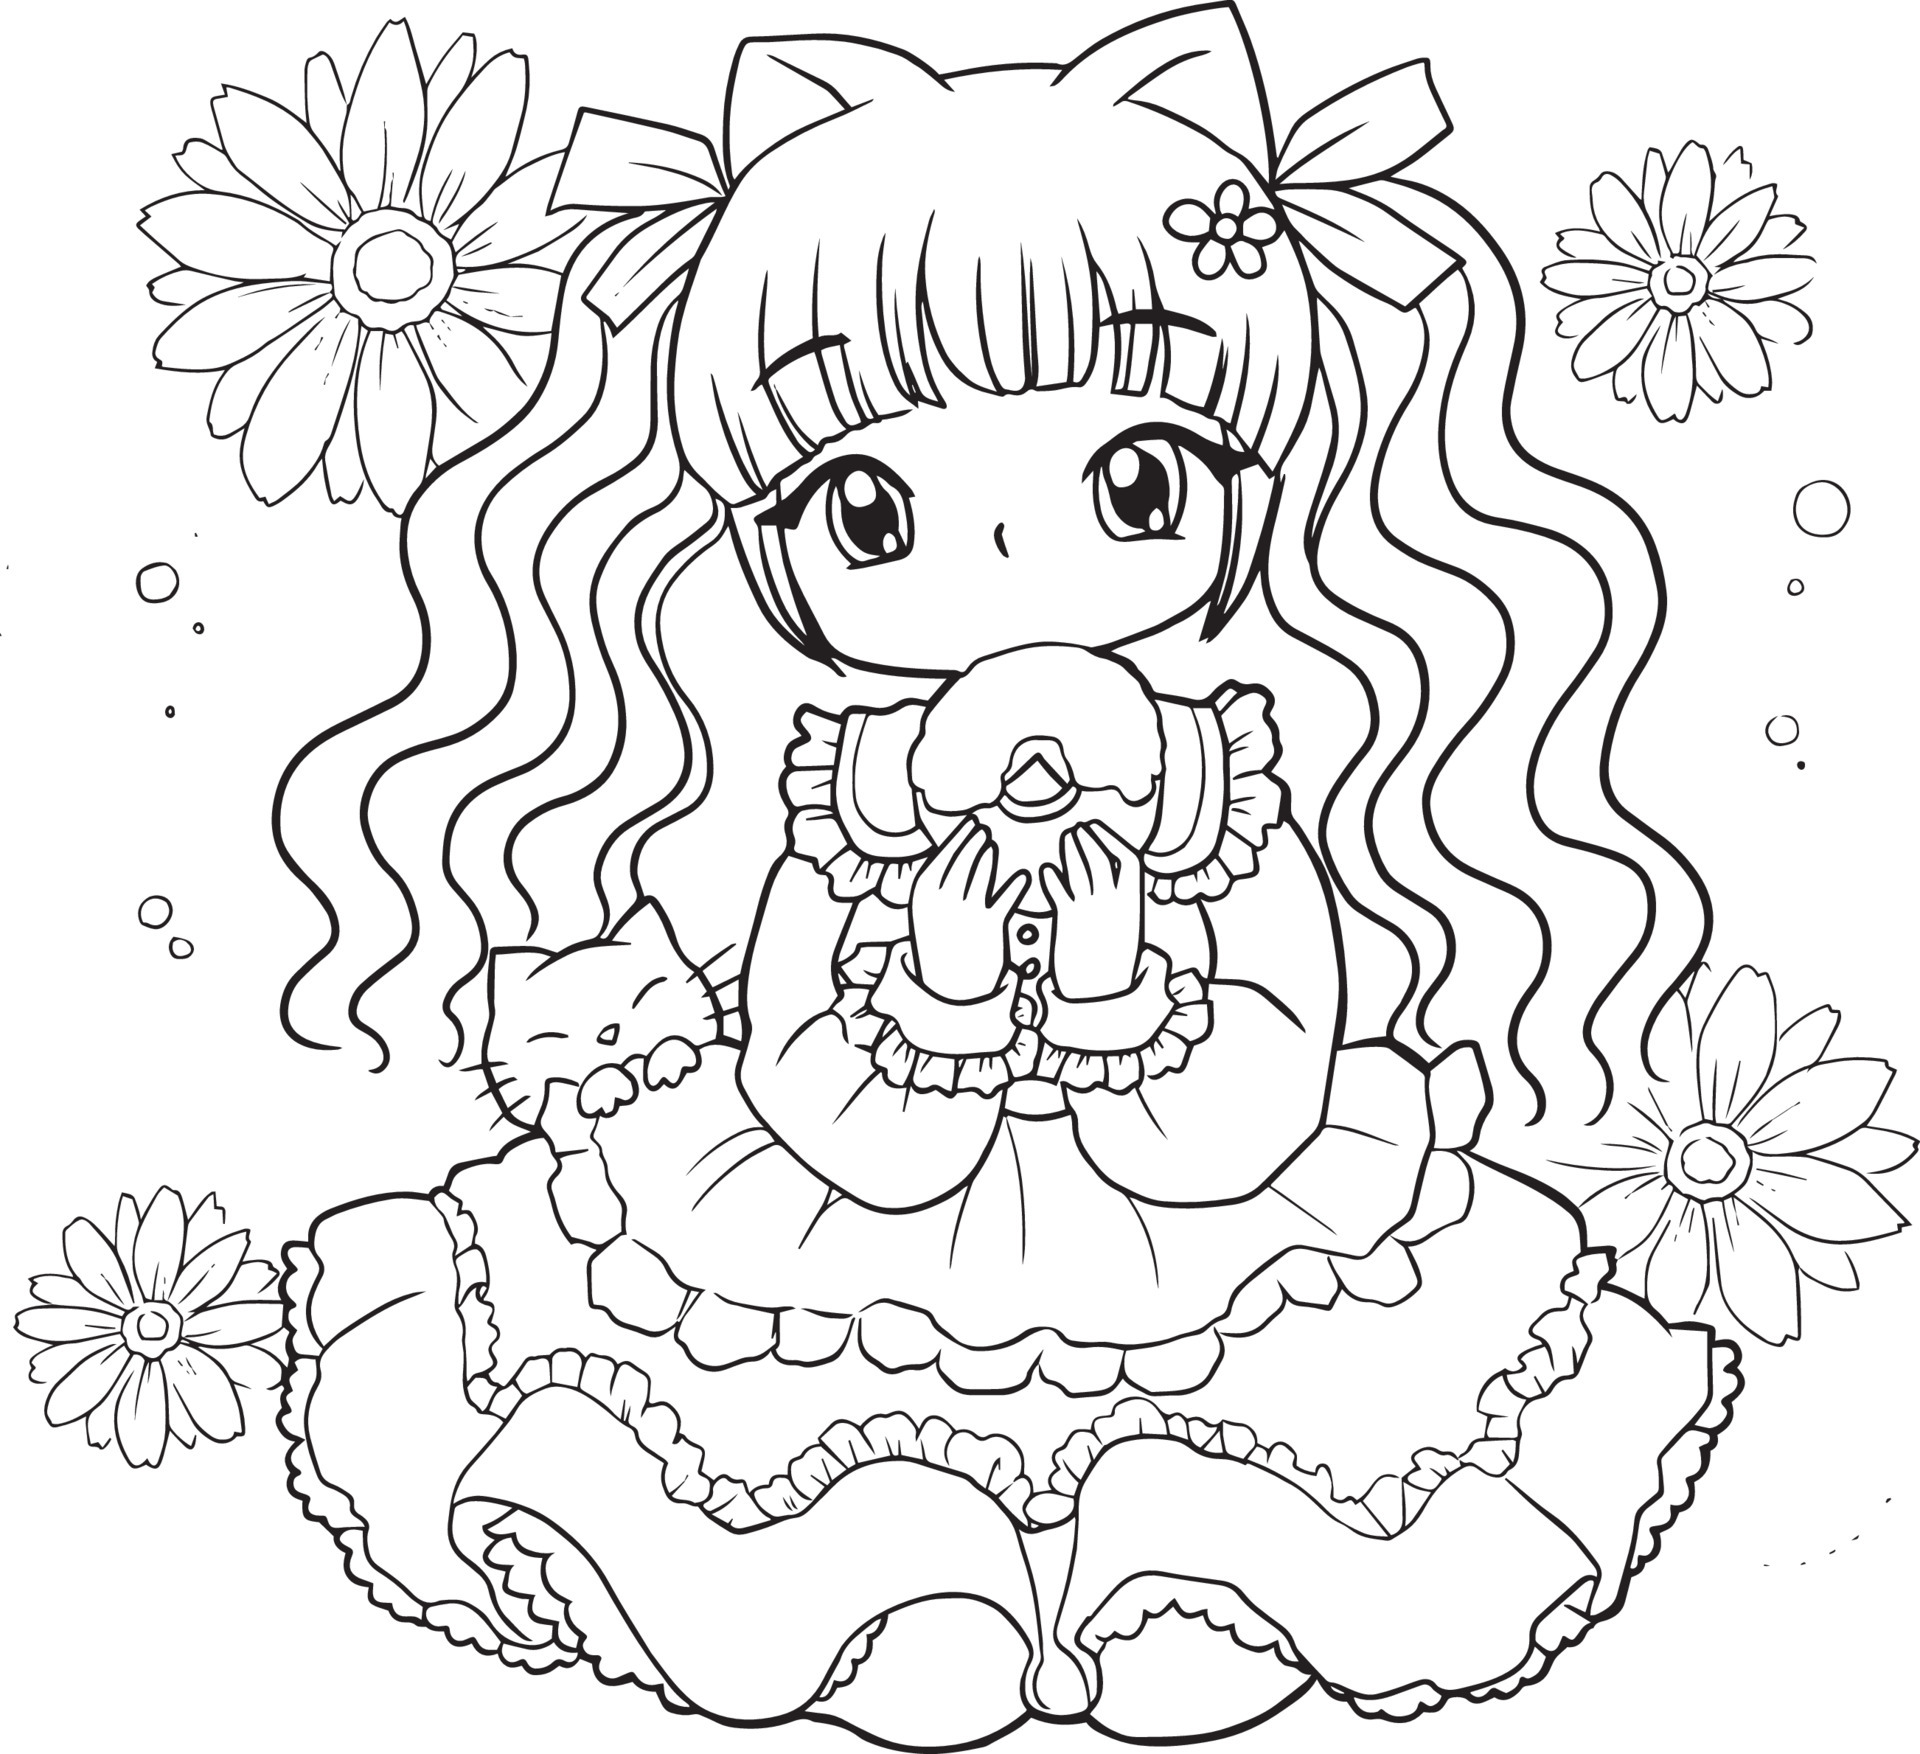 coloriage fille kawaii anime mignon dessin animé illustration clipart  dessin adorable manga téléchargement gratuit 9210248 Art vectoriel chez  Vecteezy